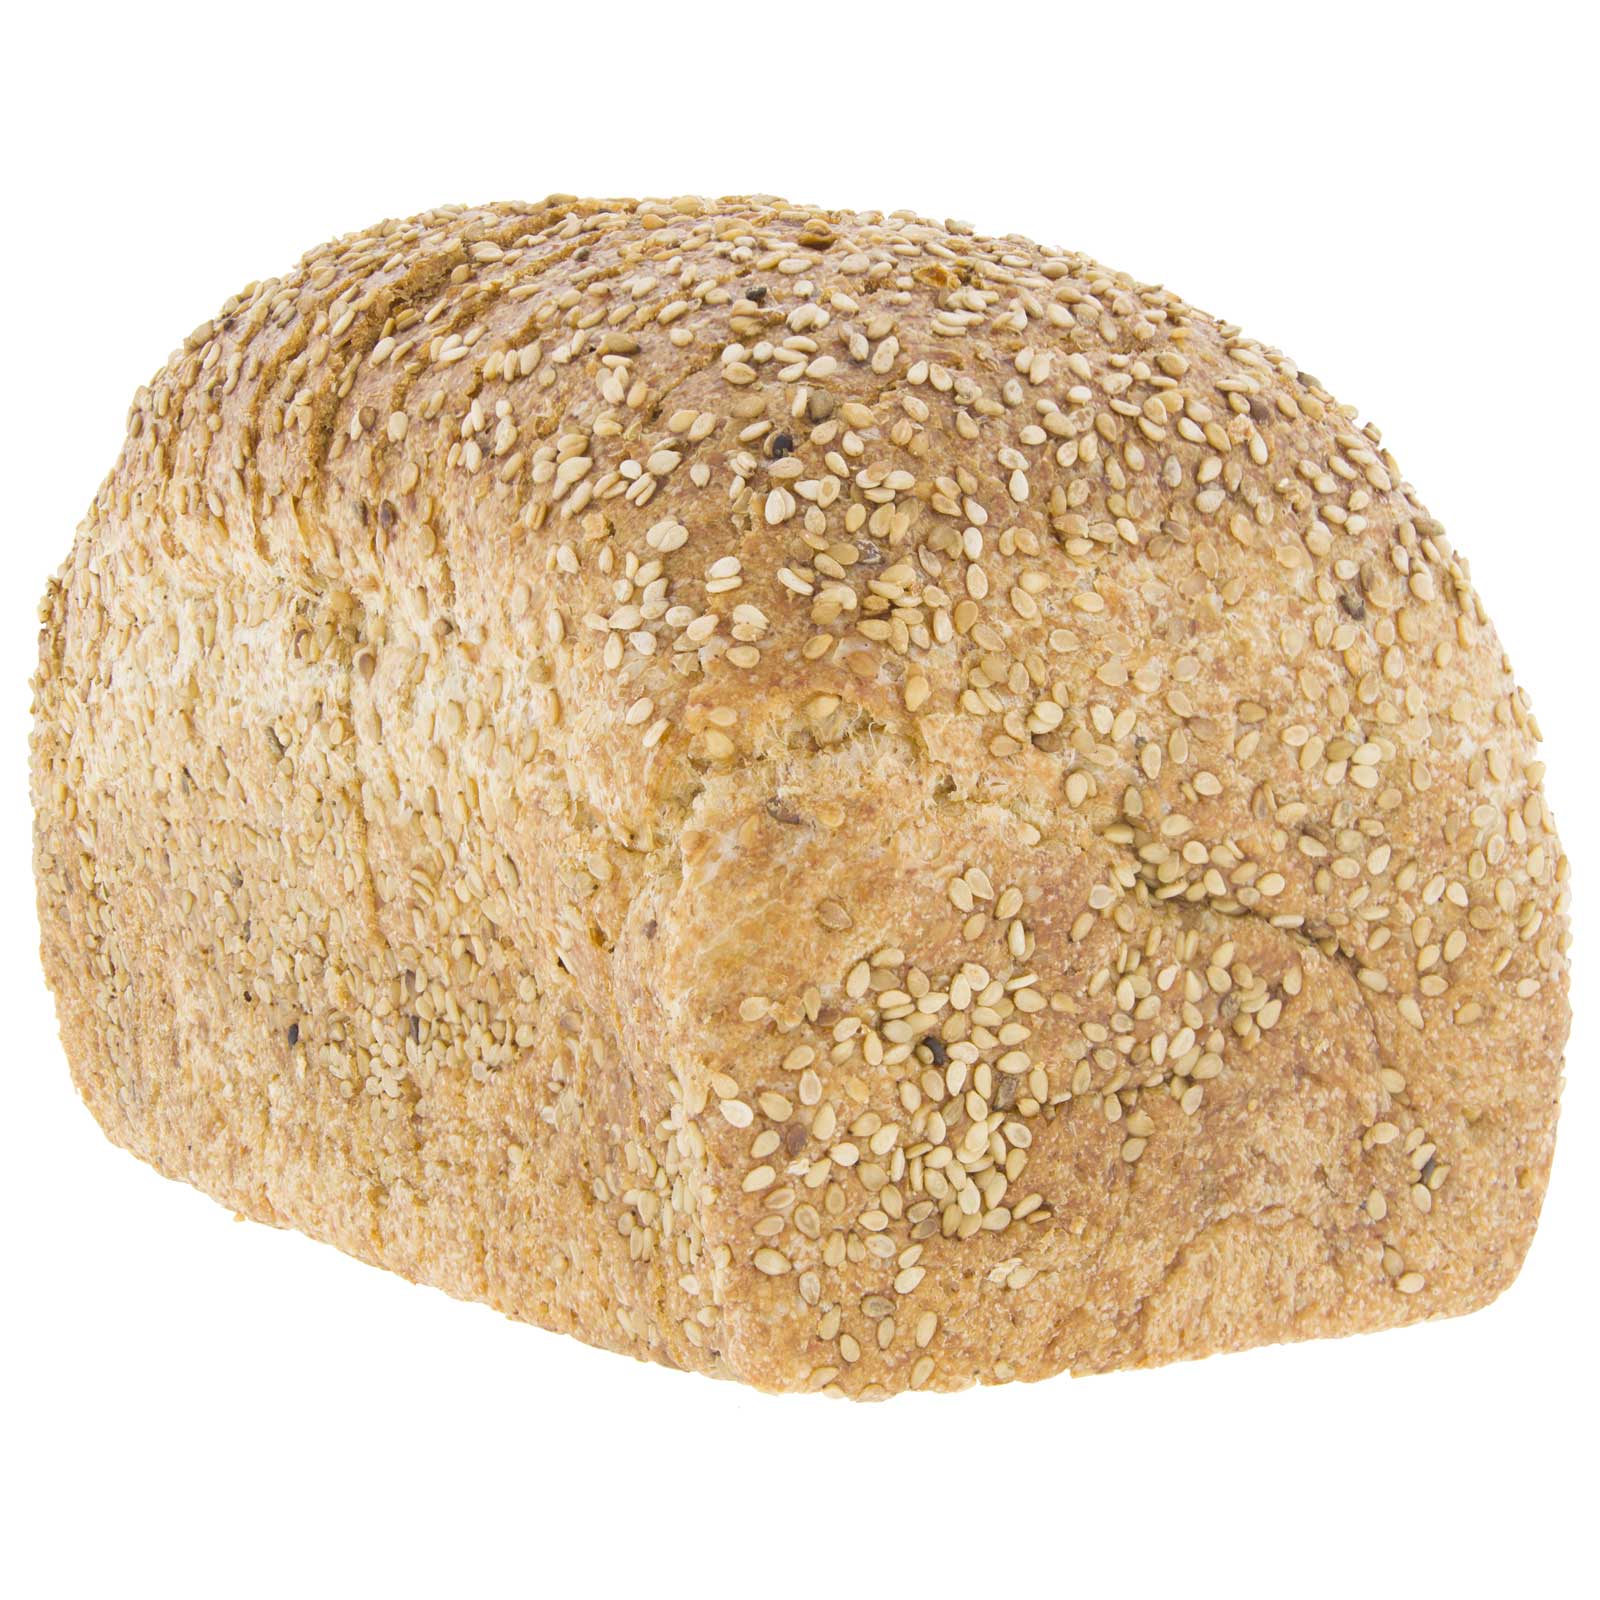 Pan de Molde de Espelta Integral con Sésamo 450g Ecológico